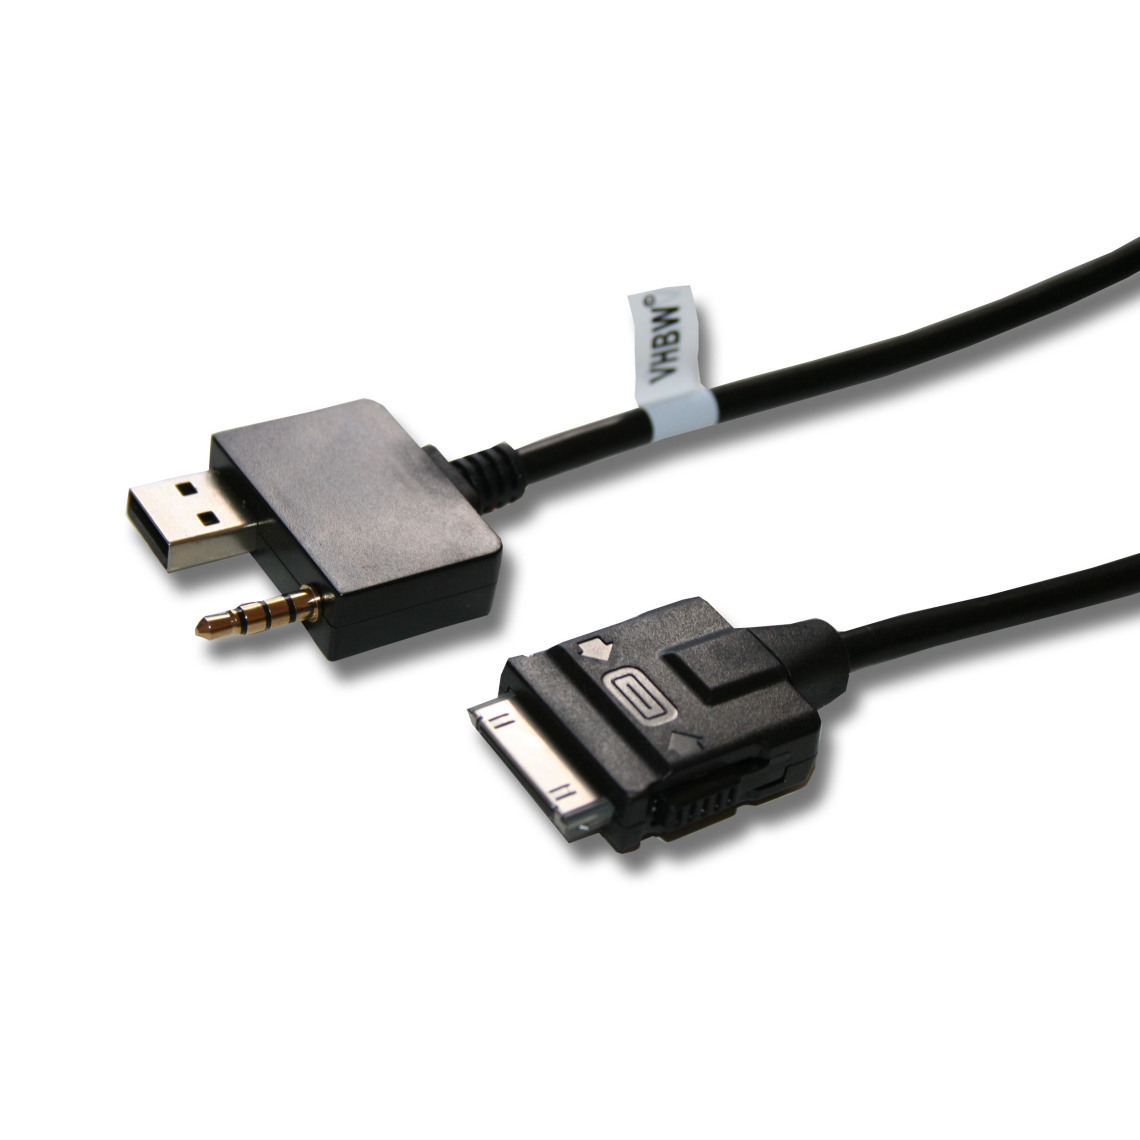 Vhbw - vhbw Câble adaptateur de ligne AUX Radio remplace 96125-1H500, 9999Z-01160 pour voiture, véhicule - USB - Alimentation modulaire